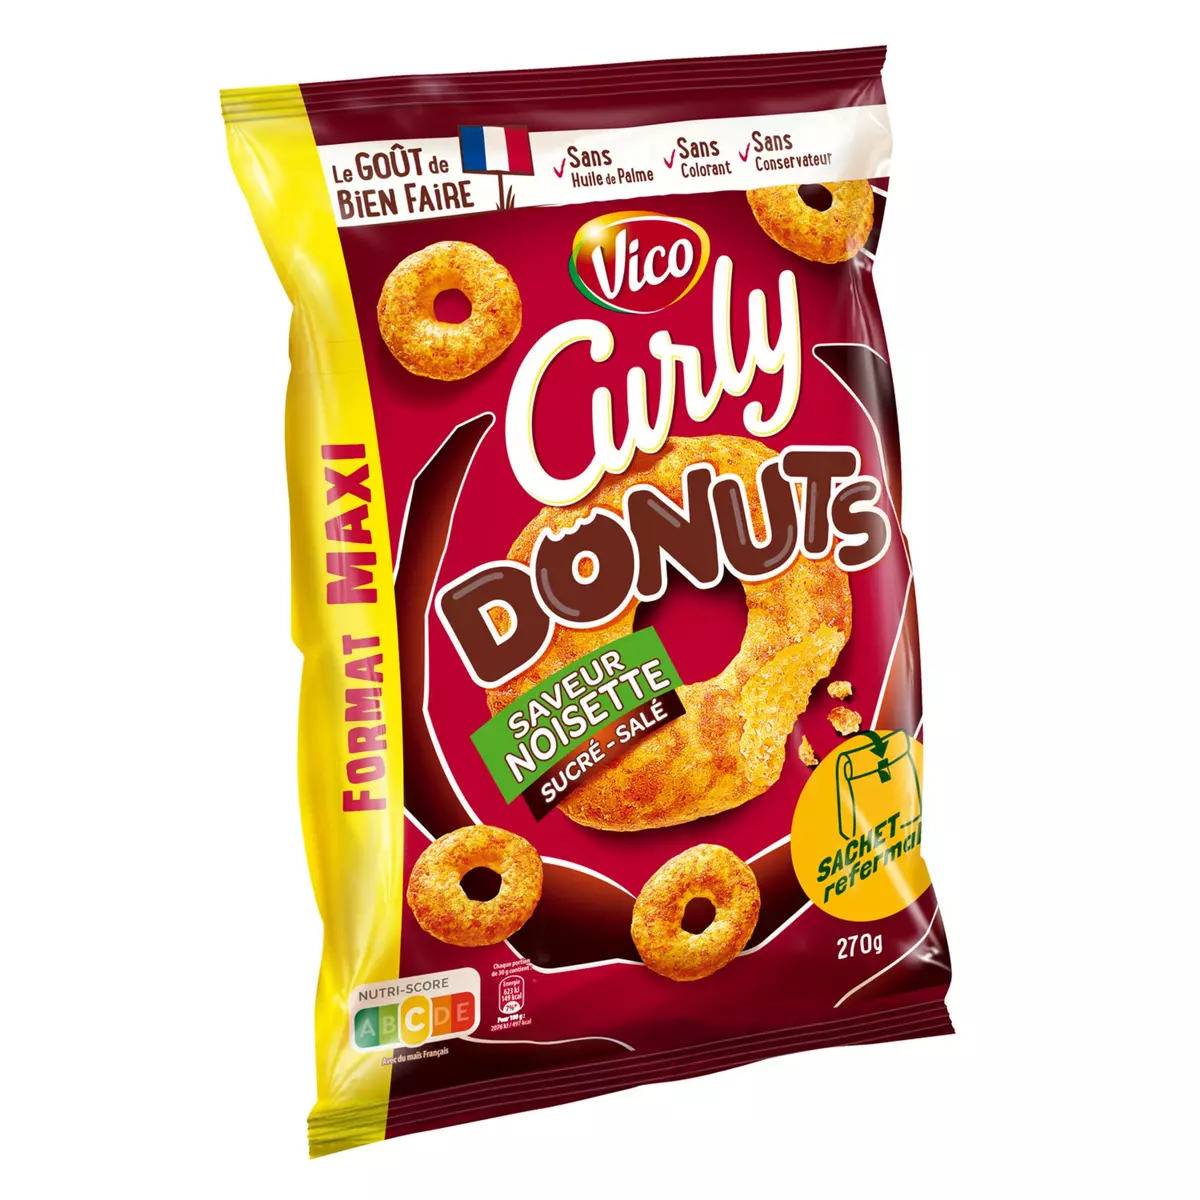 CURLY Biscuits soufflés Donuts goût noisette sucré-salé maxi format 270g